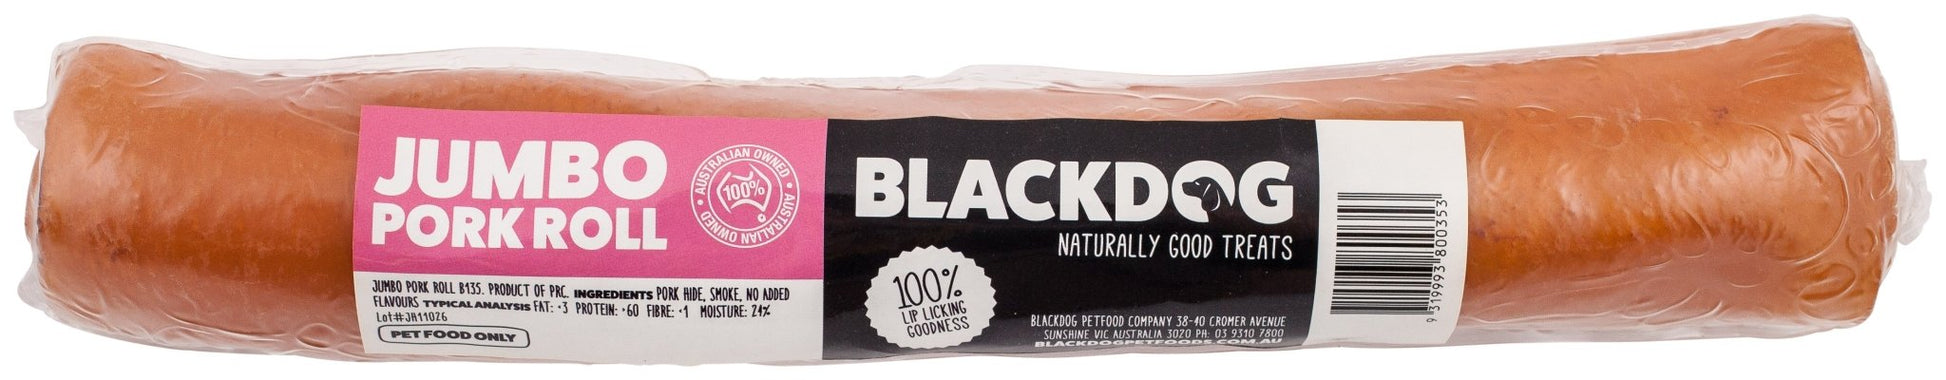 Blackdog Jumbo Pork Roll - Woonona Petfood & Produce